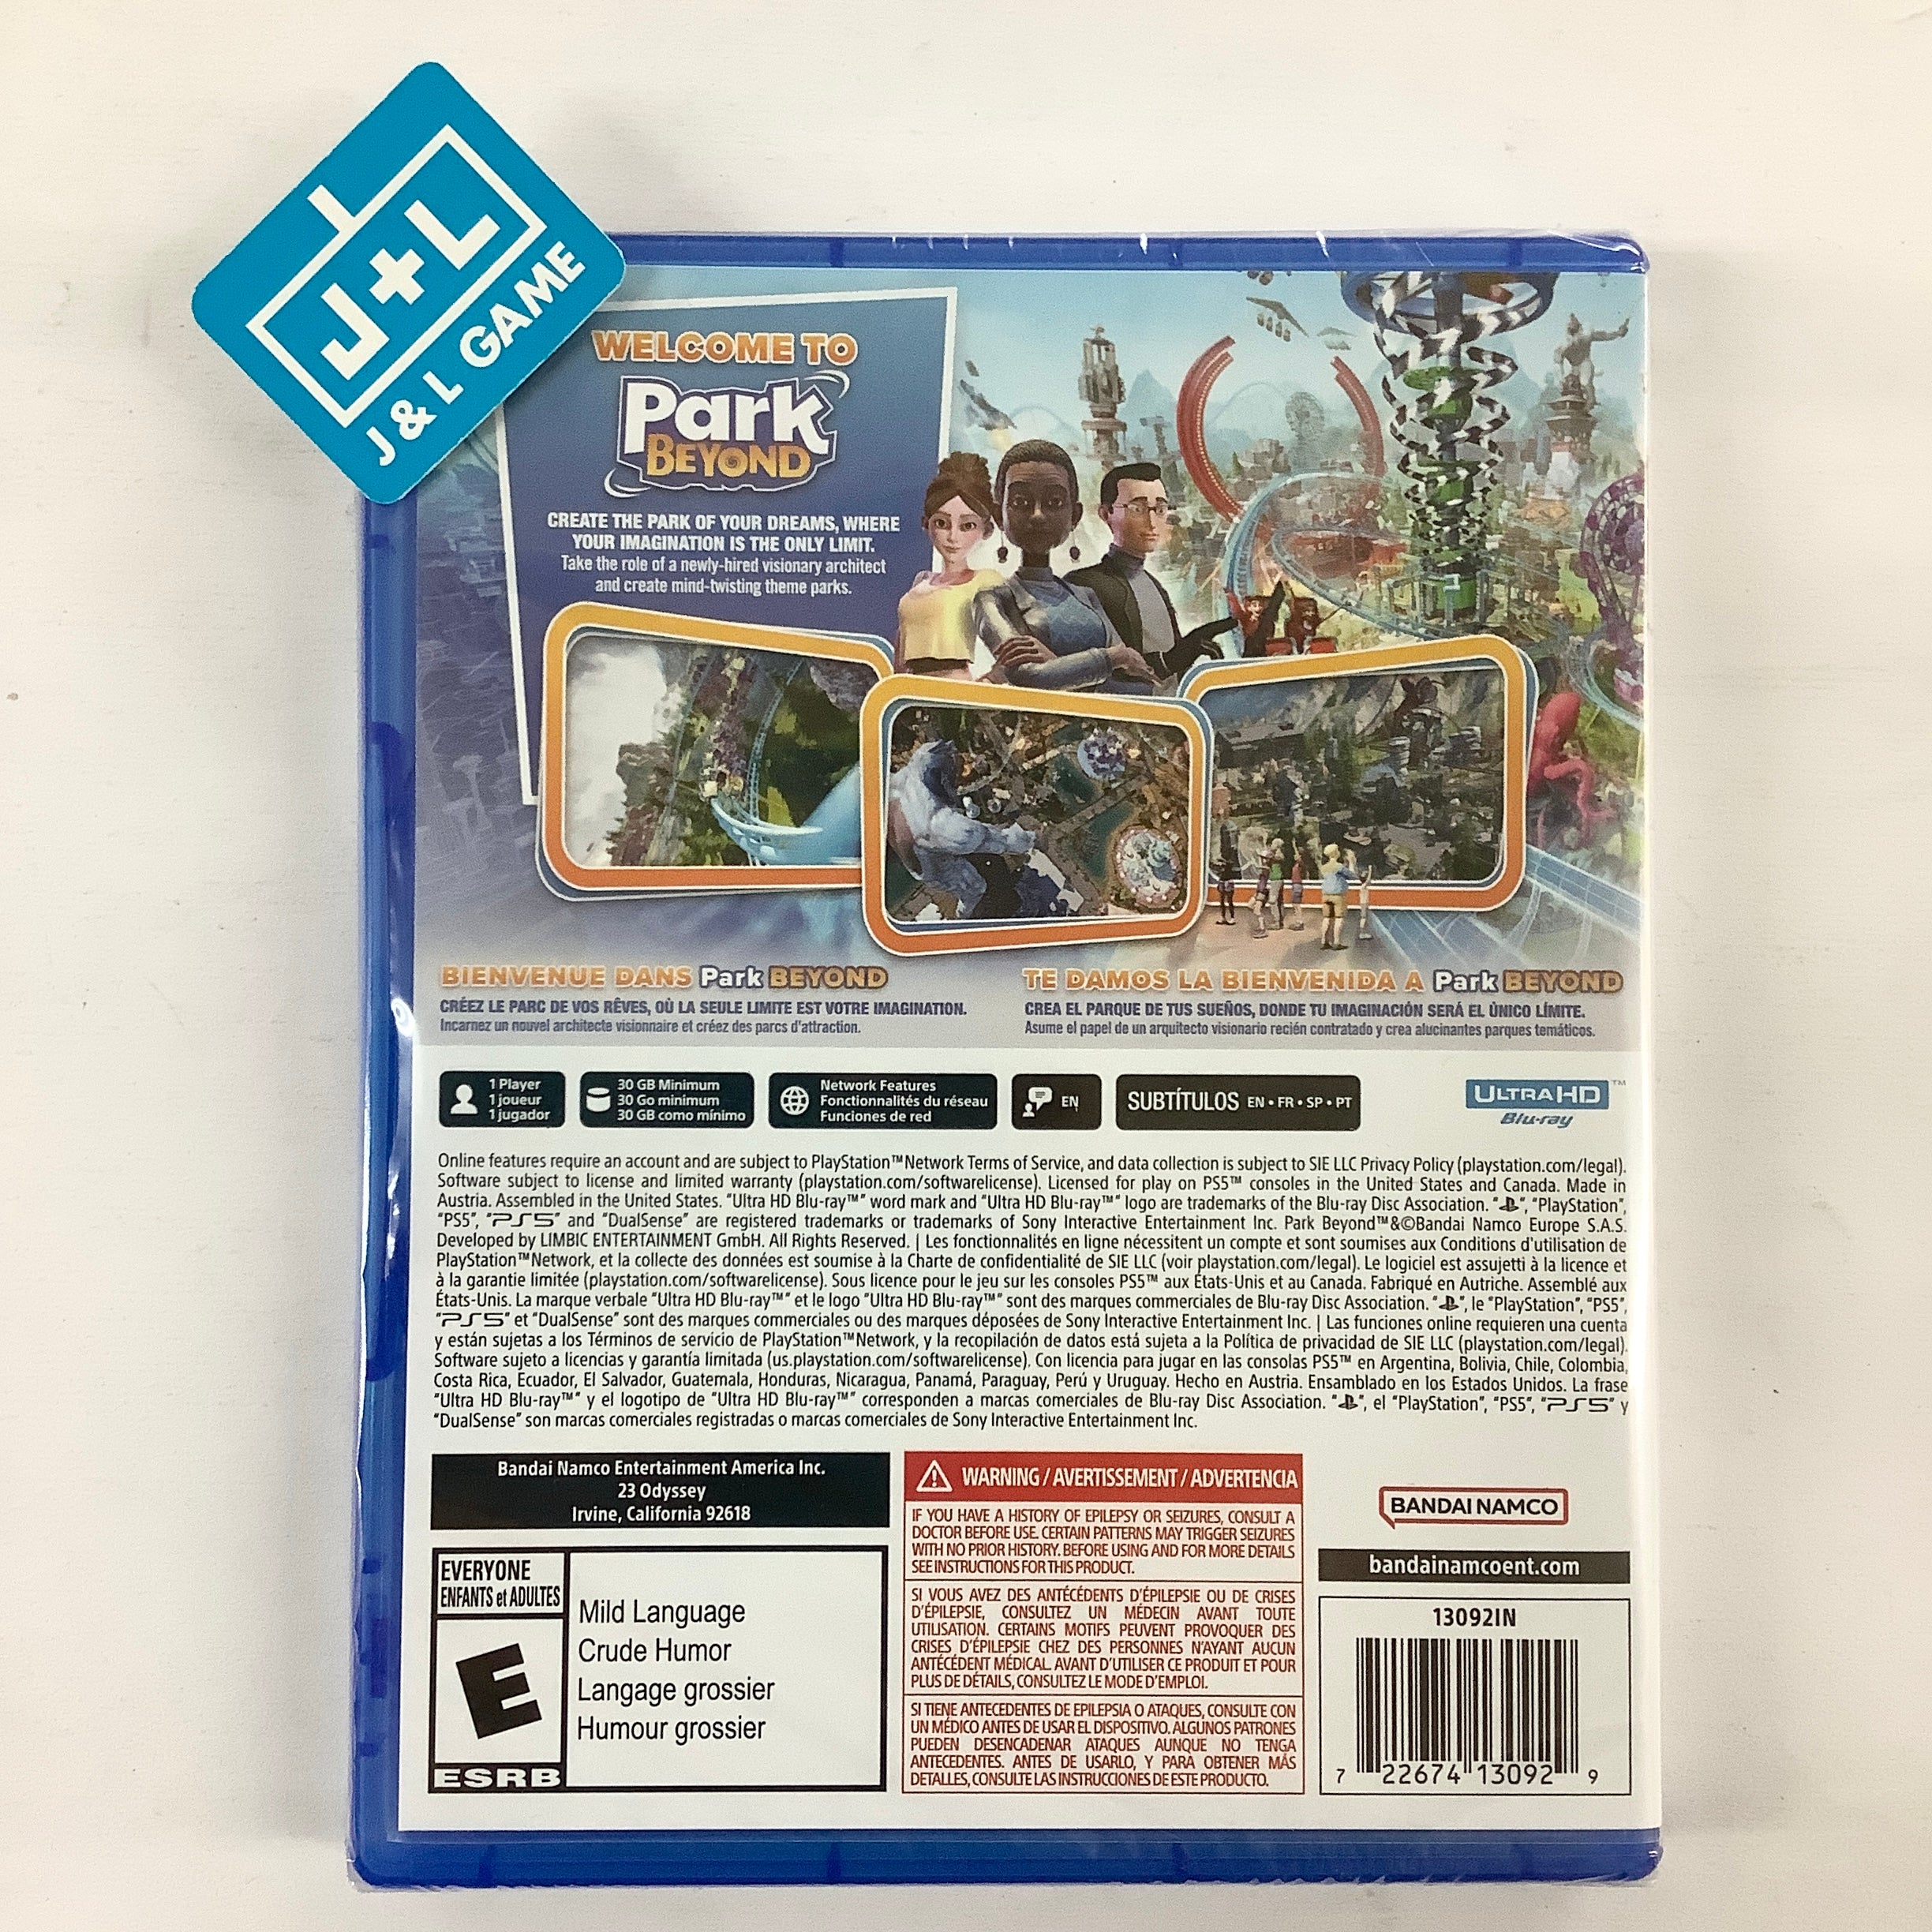 Park Beyond - (PS5) PlayStation 5 Video Games BANDAI NAMCO Entertainment   